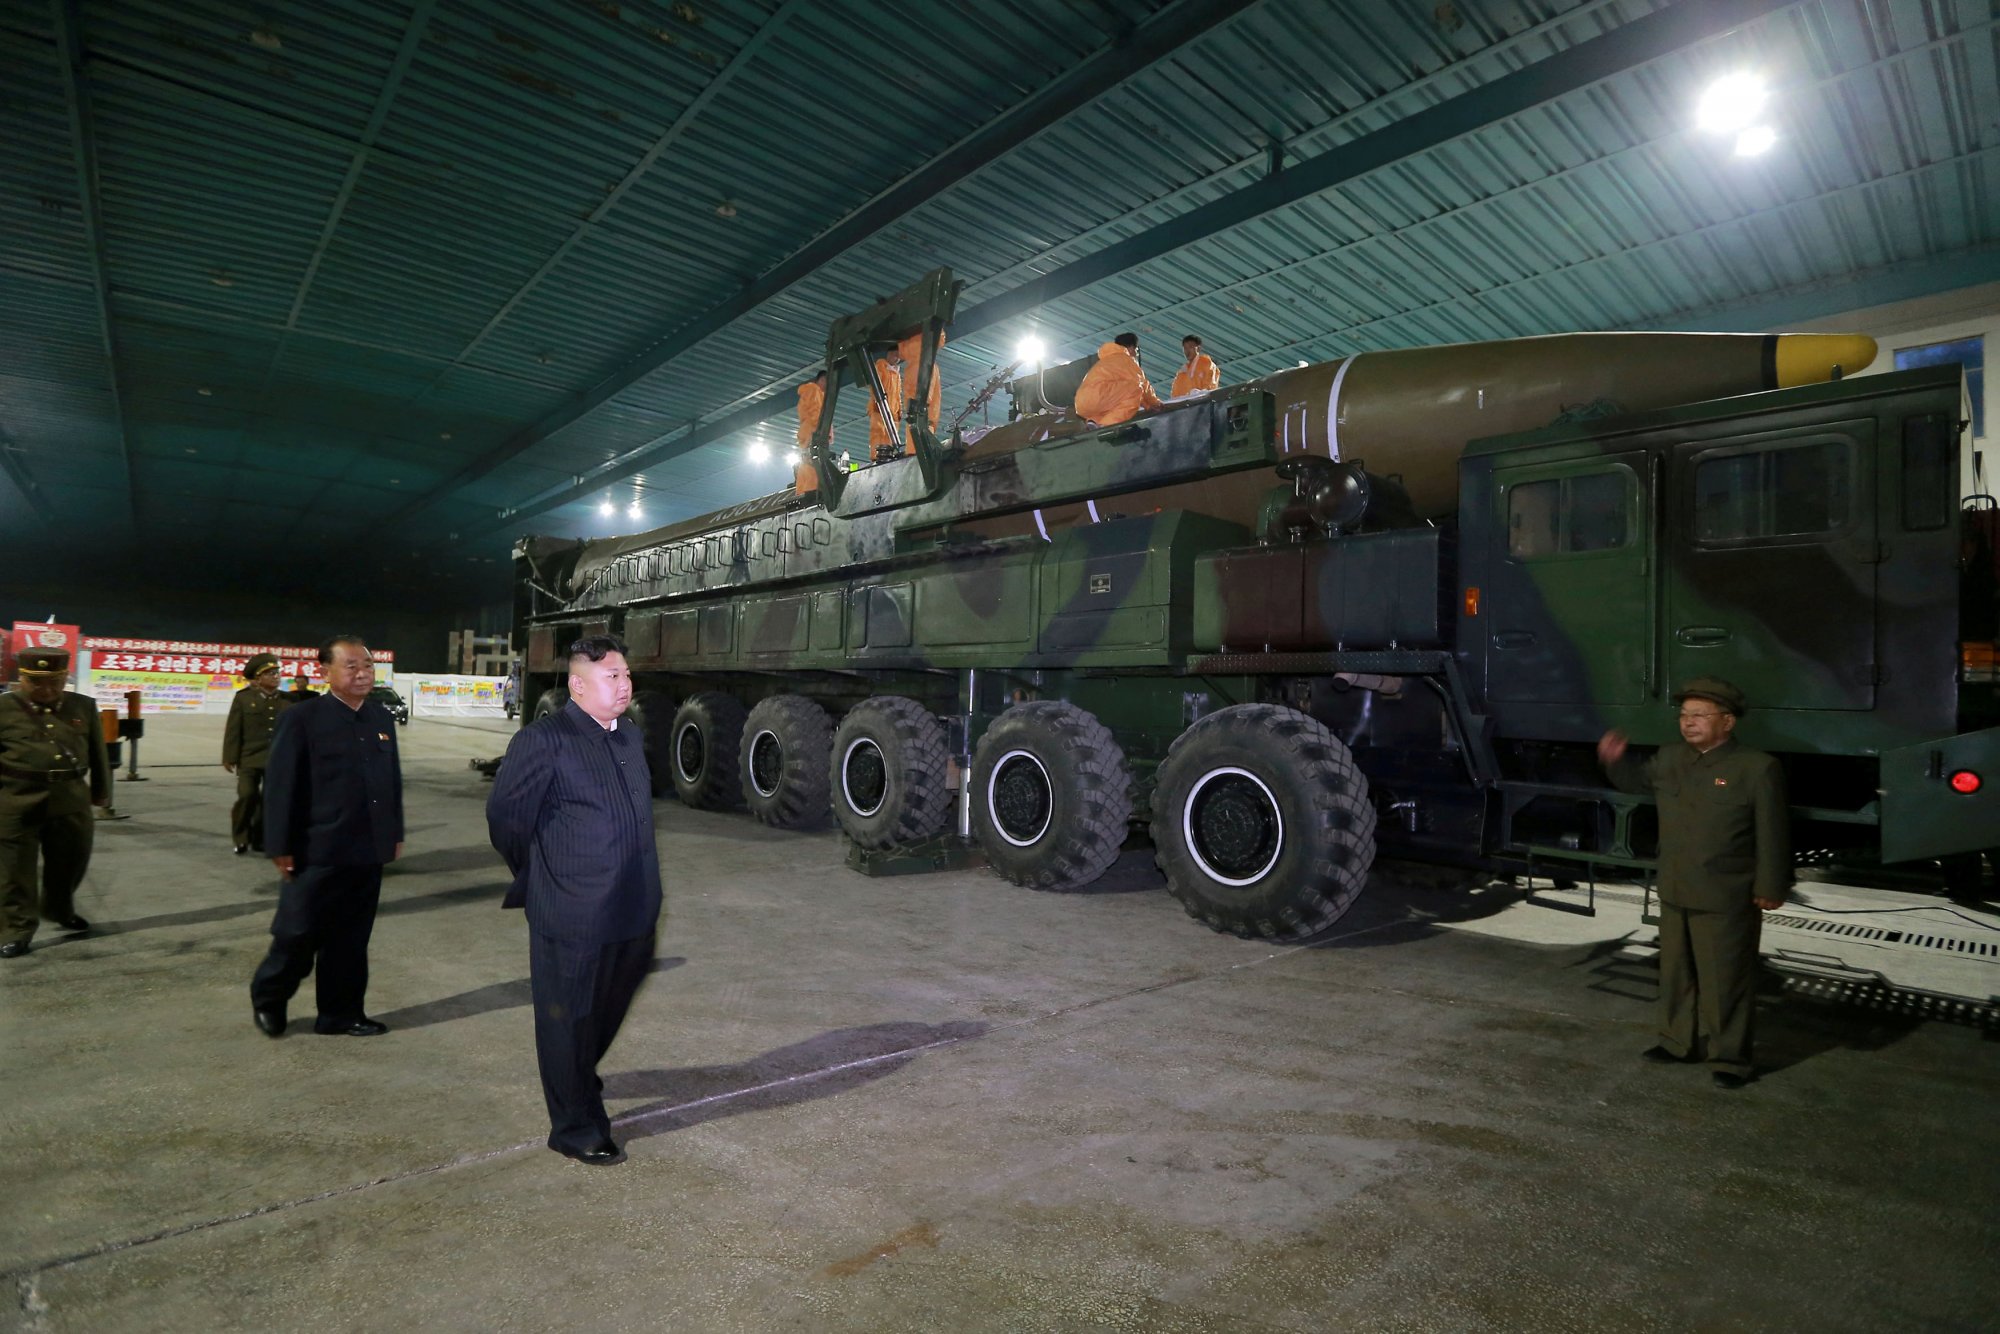 Βόρεια Κορέα: Ιαχές πολέμου στον ΟΗΕ - «Είμαστε στα πρόθυμα πυρηνικού ολέθρου»